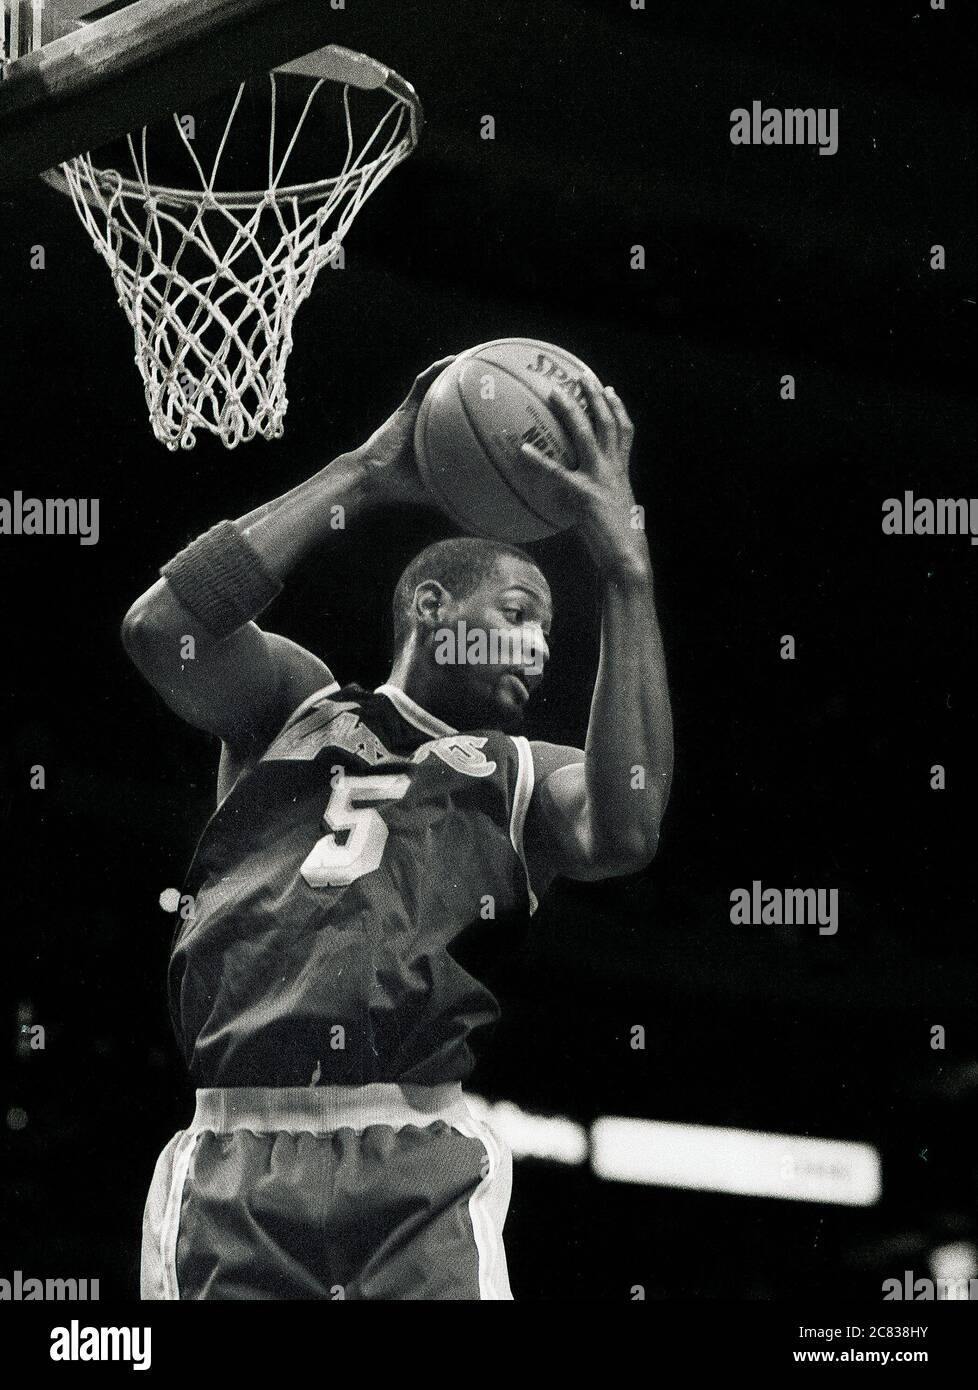 LA Lakers # 5 Robert Horry Rebounds in Spiel-Action gegen die Boston Celtics während der Saison 1996-97 im Fleet Center in Boston Ma USA Foto von Bill belknap Stockfoto